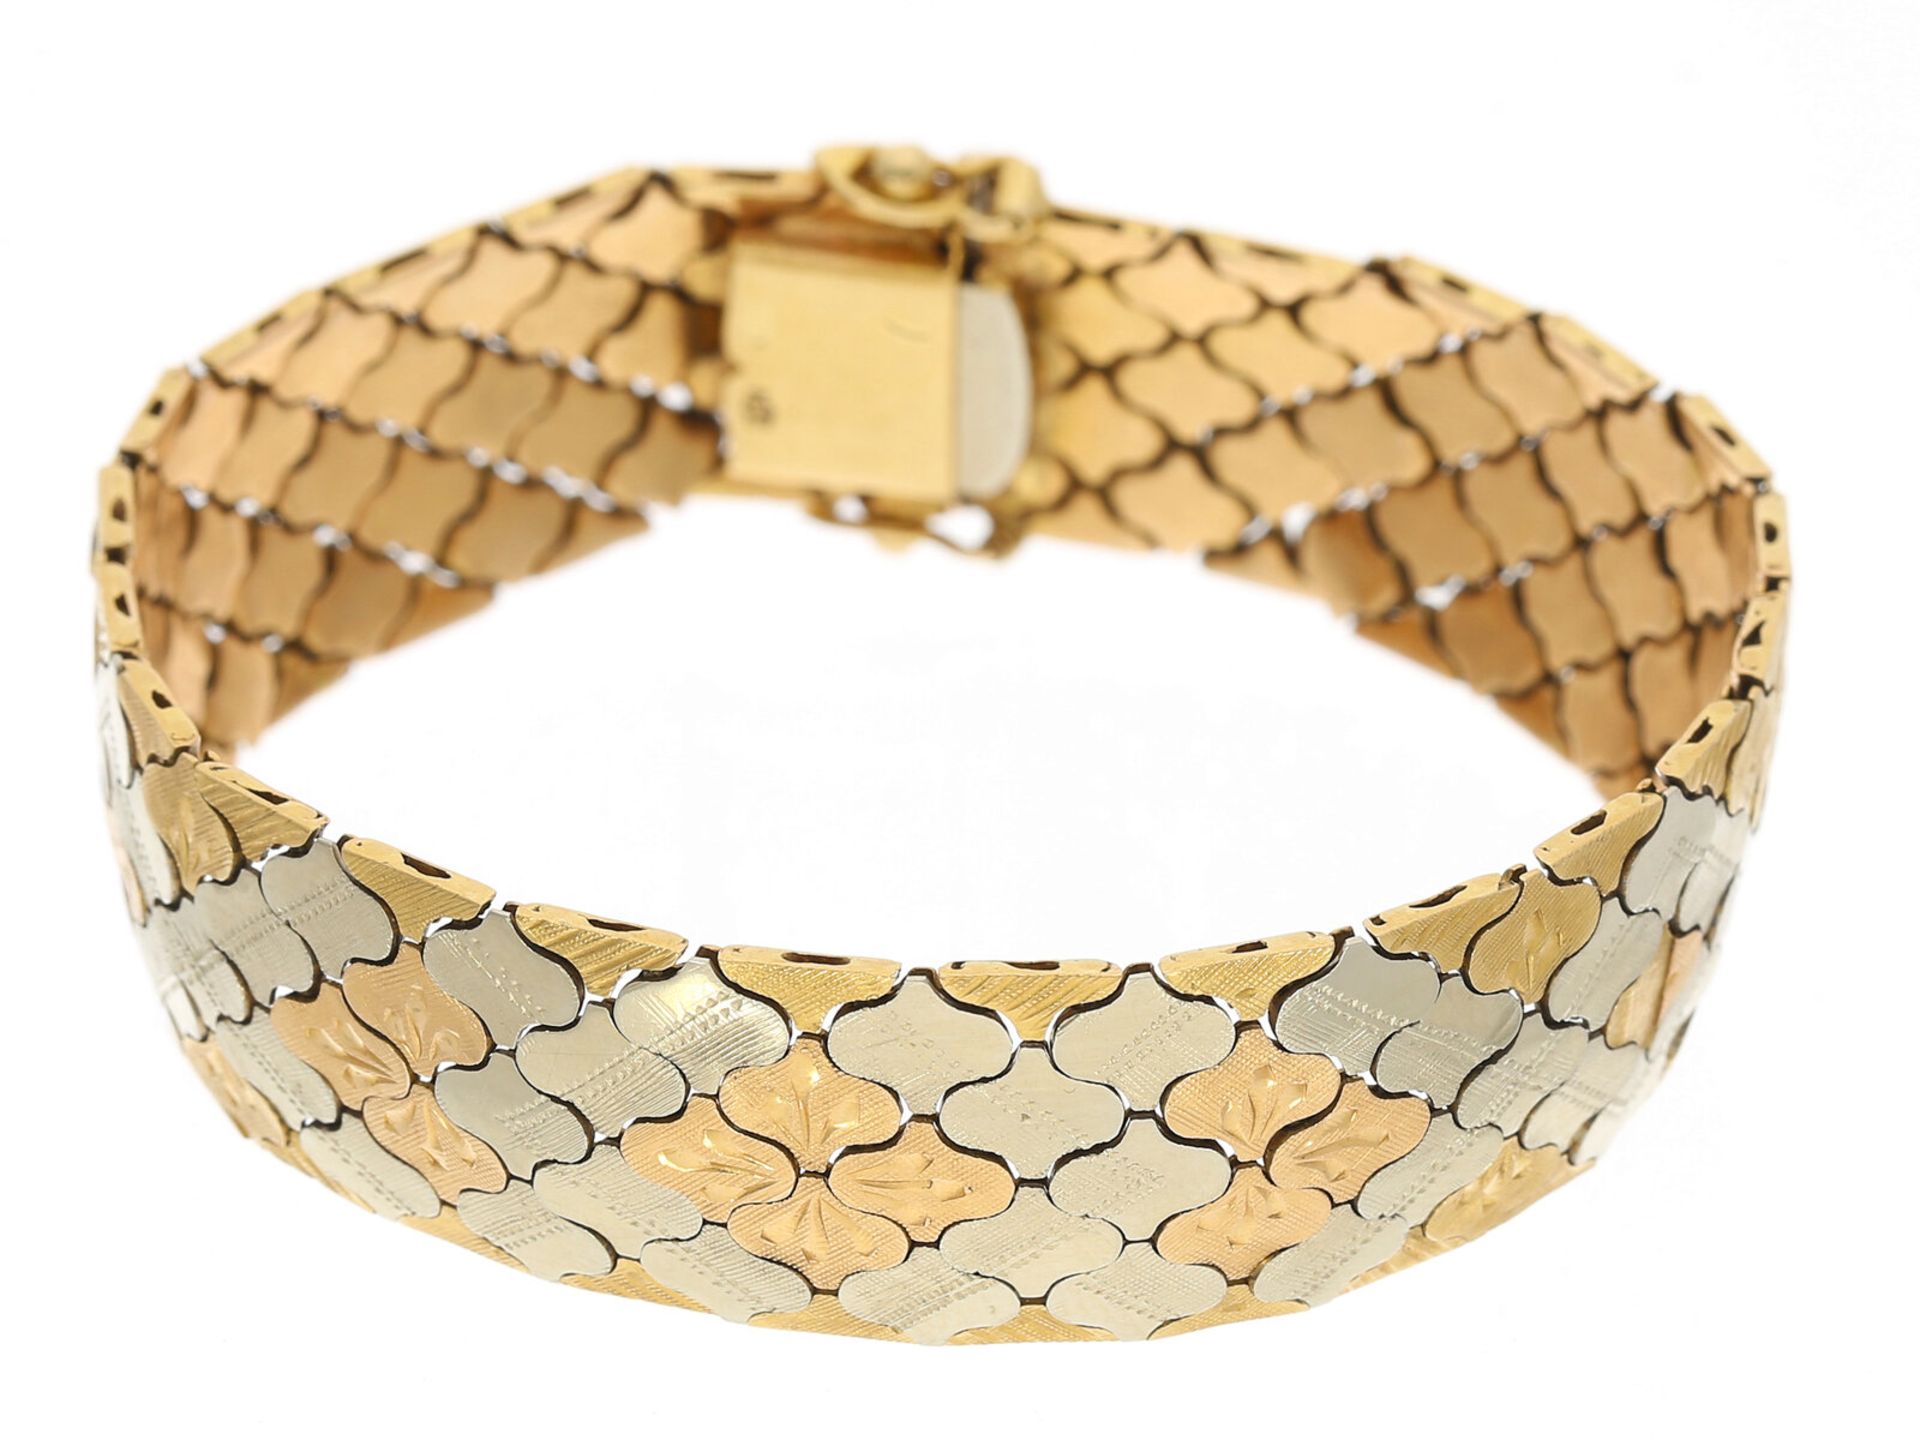 Hochwertiges, sehr dekoratives vintage Tricolor-Armband aus 18K Gold